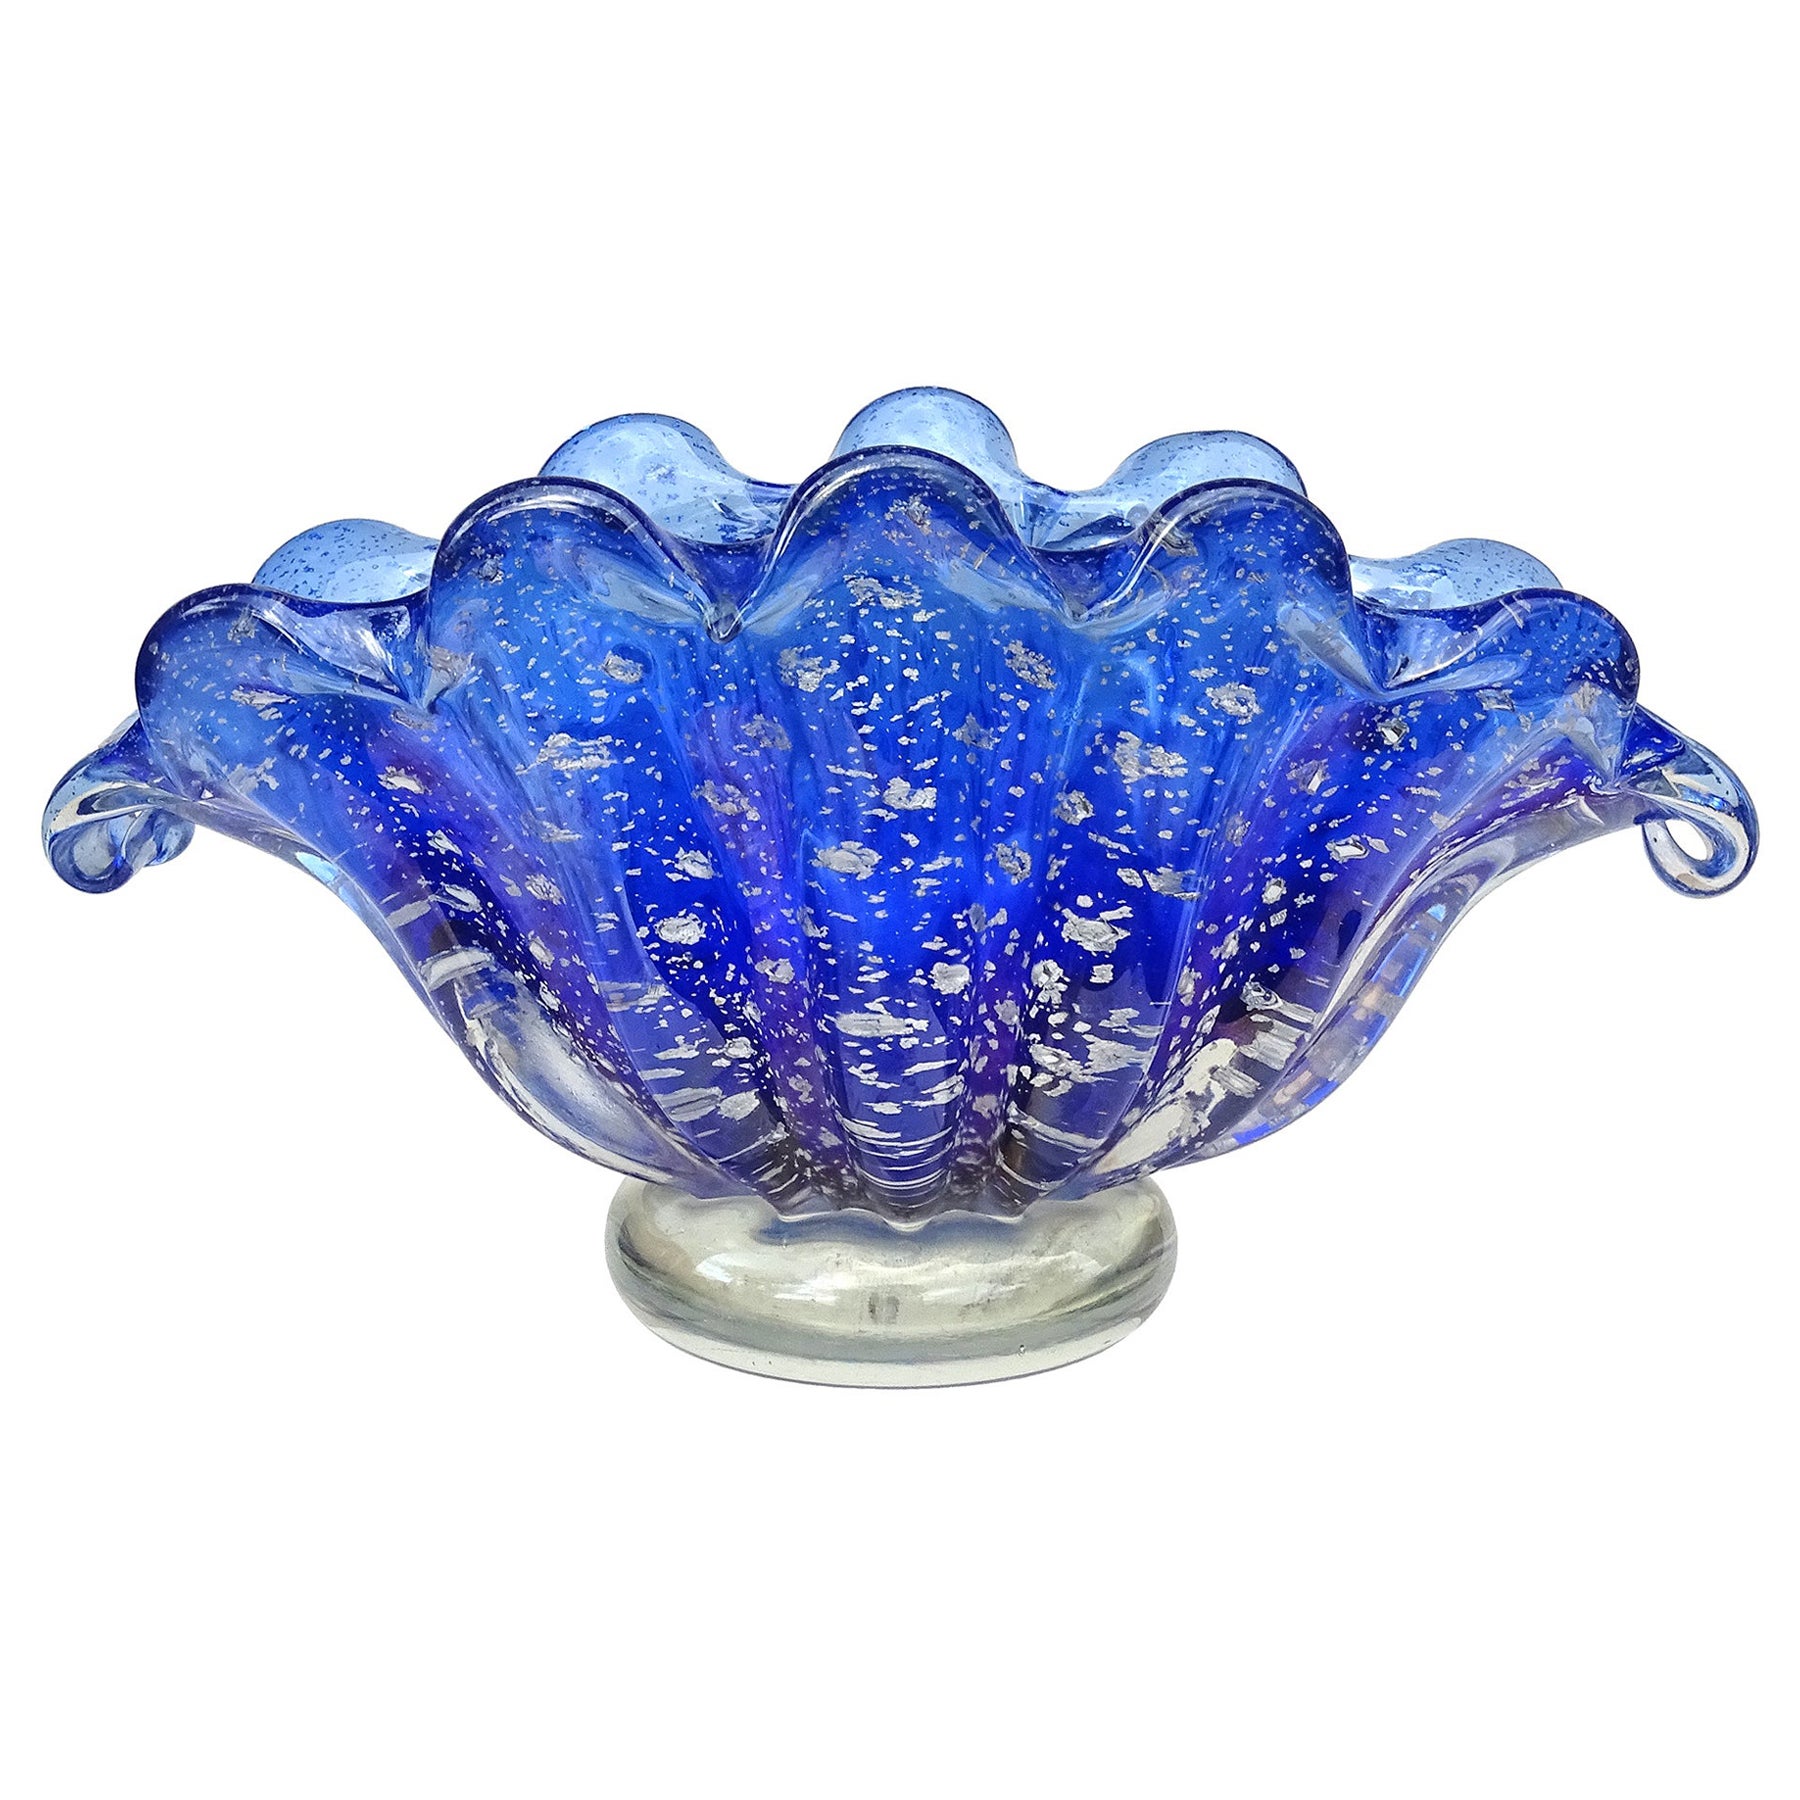 Barovier Toso Murano Cobalt Blue Silver Flecks Italian Art Glass Shell Bowl Vase